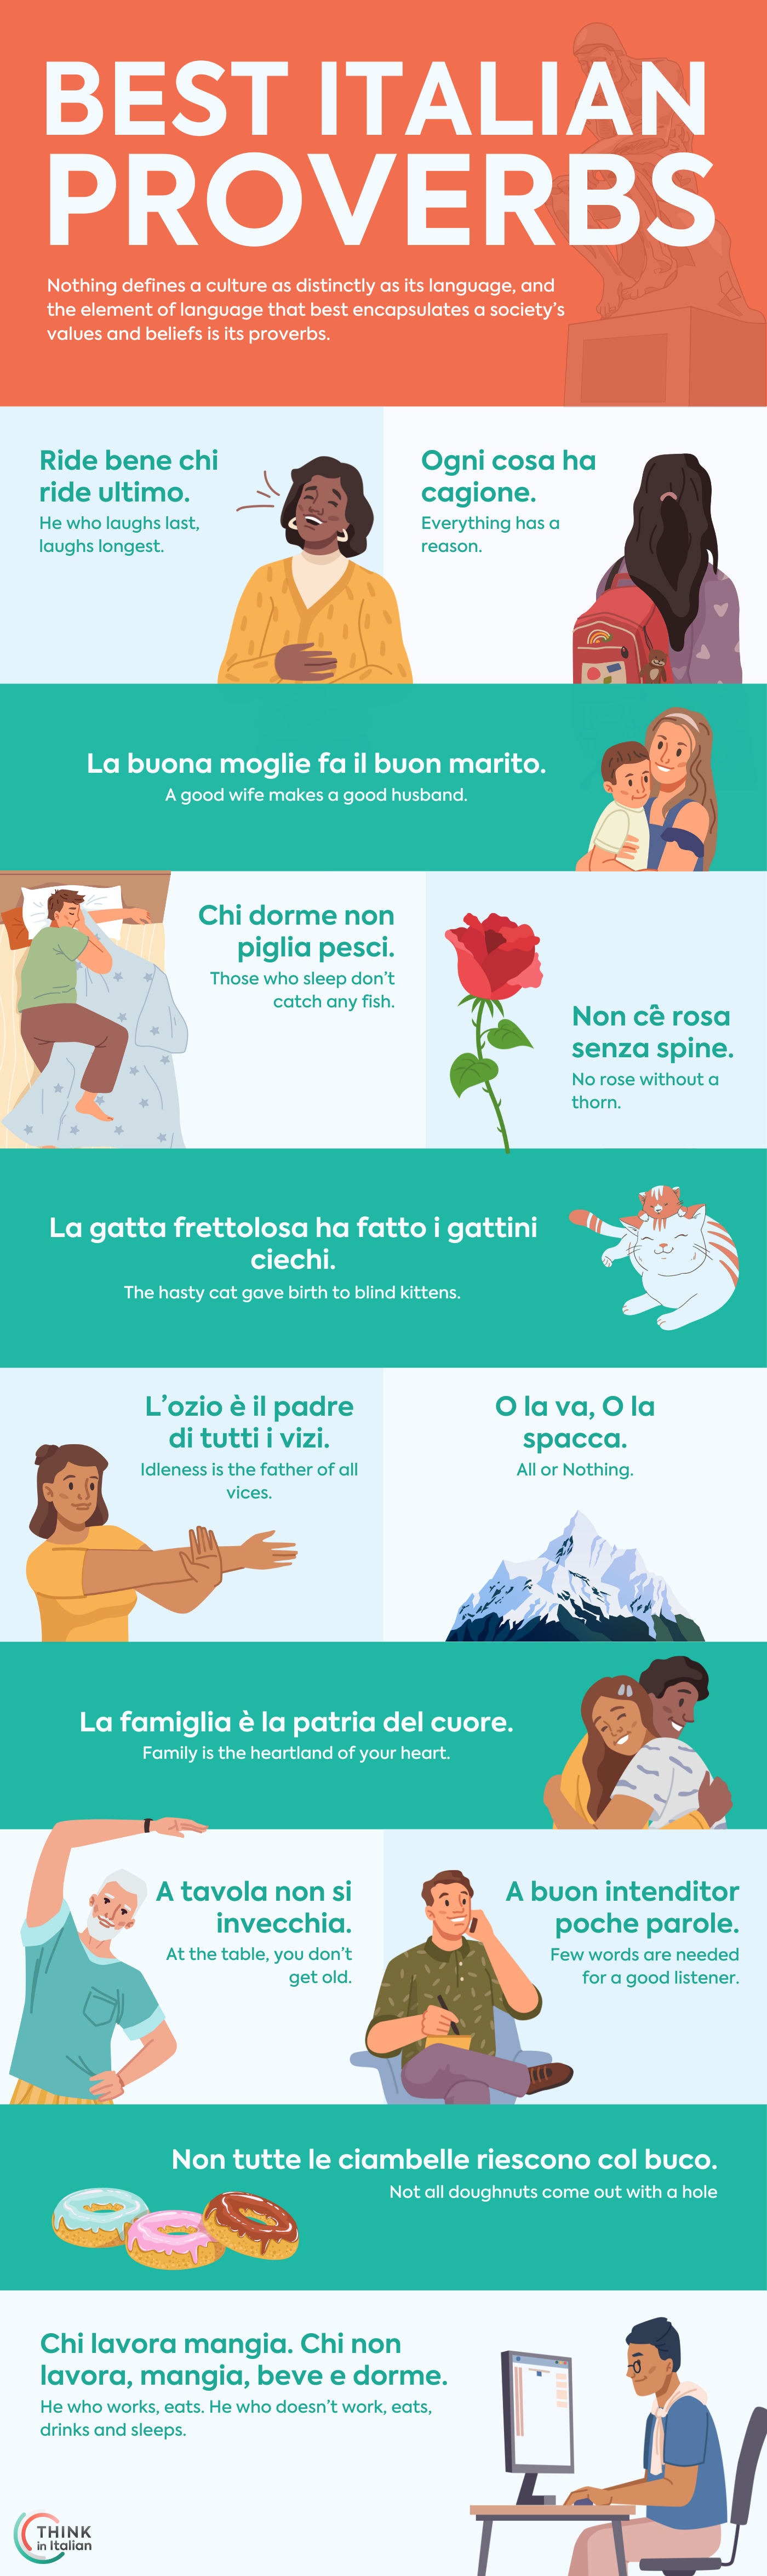 Best Italian Proverbs